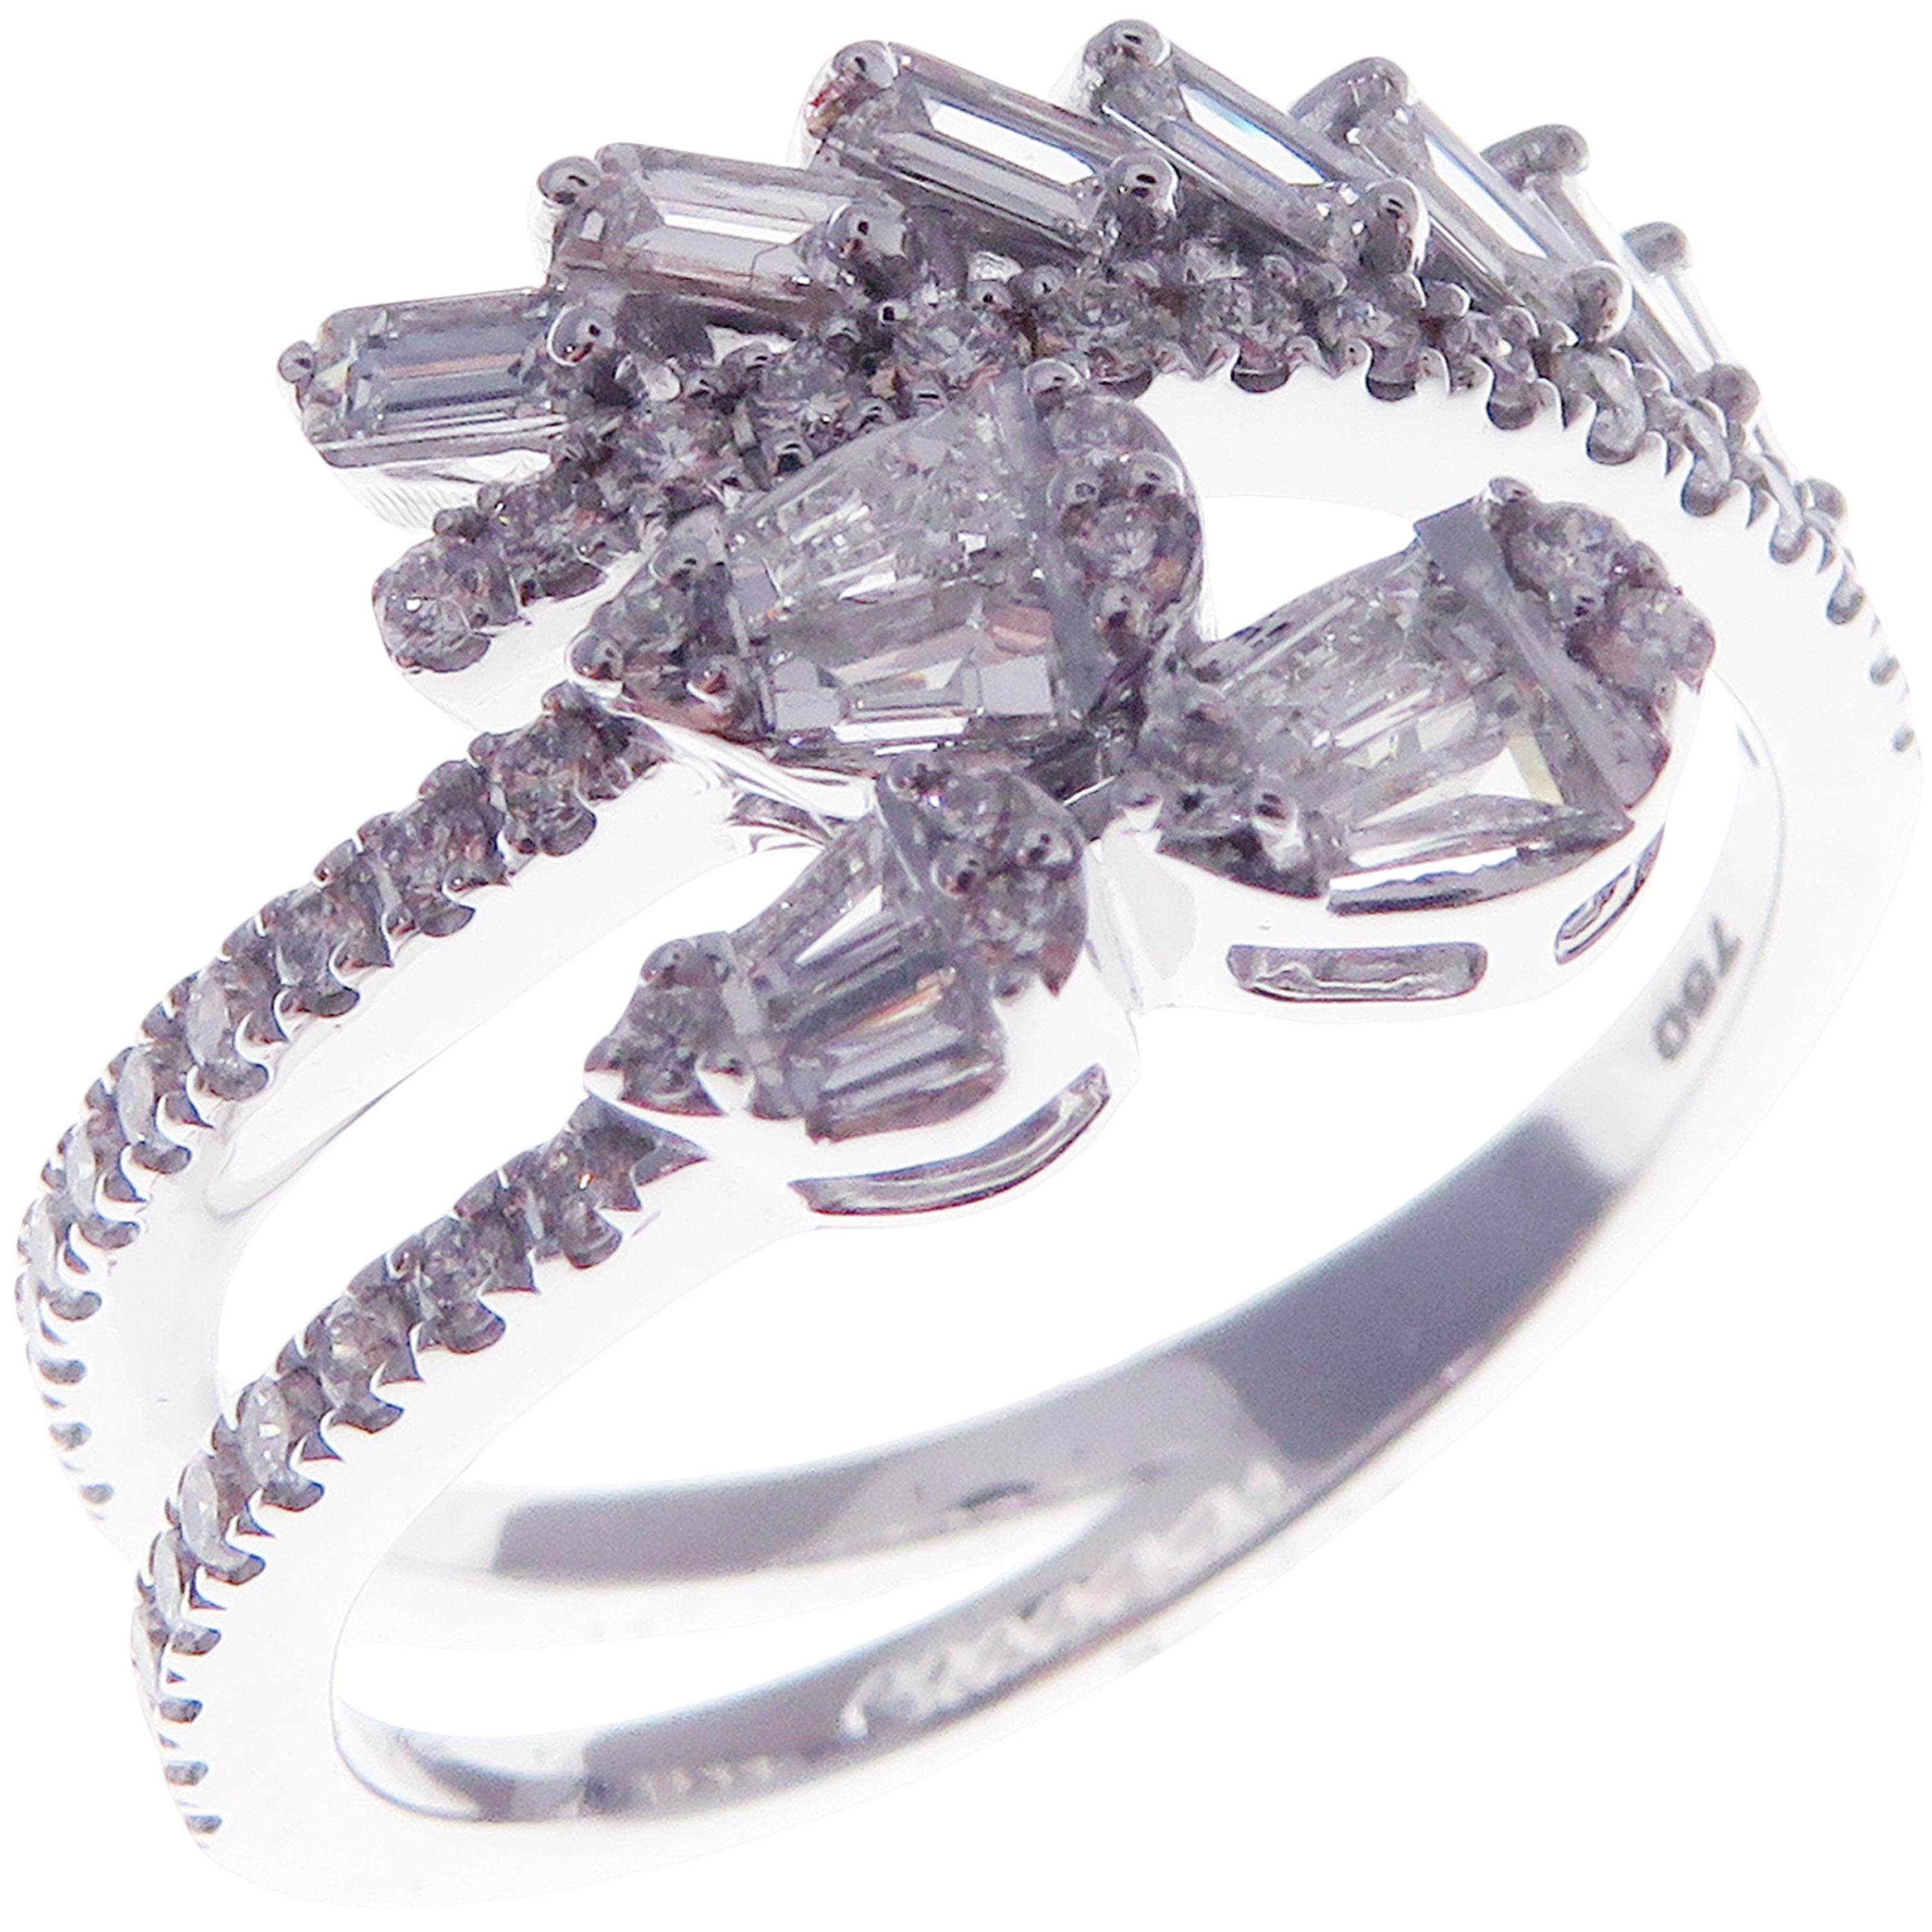 Dieser trendige mehrschichtige Ring ist aus 18 Karat Weißgold gefertigt und mit 43 runden weißen Diamanten von insgesamt 0,29 Karat und 13 weißen Baguette-Diamanten von insgesamt 0,47 Karat besetzt.
Ungefähres Gesamtgewicht 4,64 Gramm.
Standard